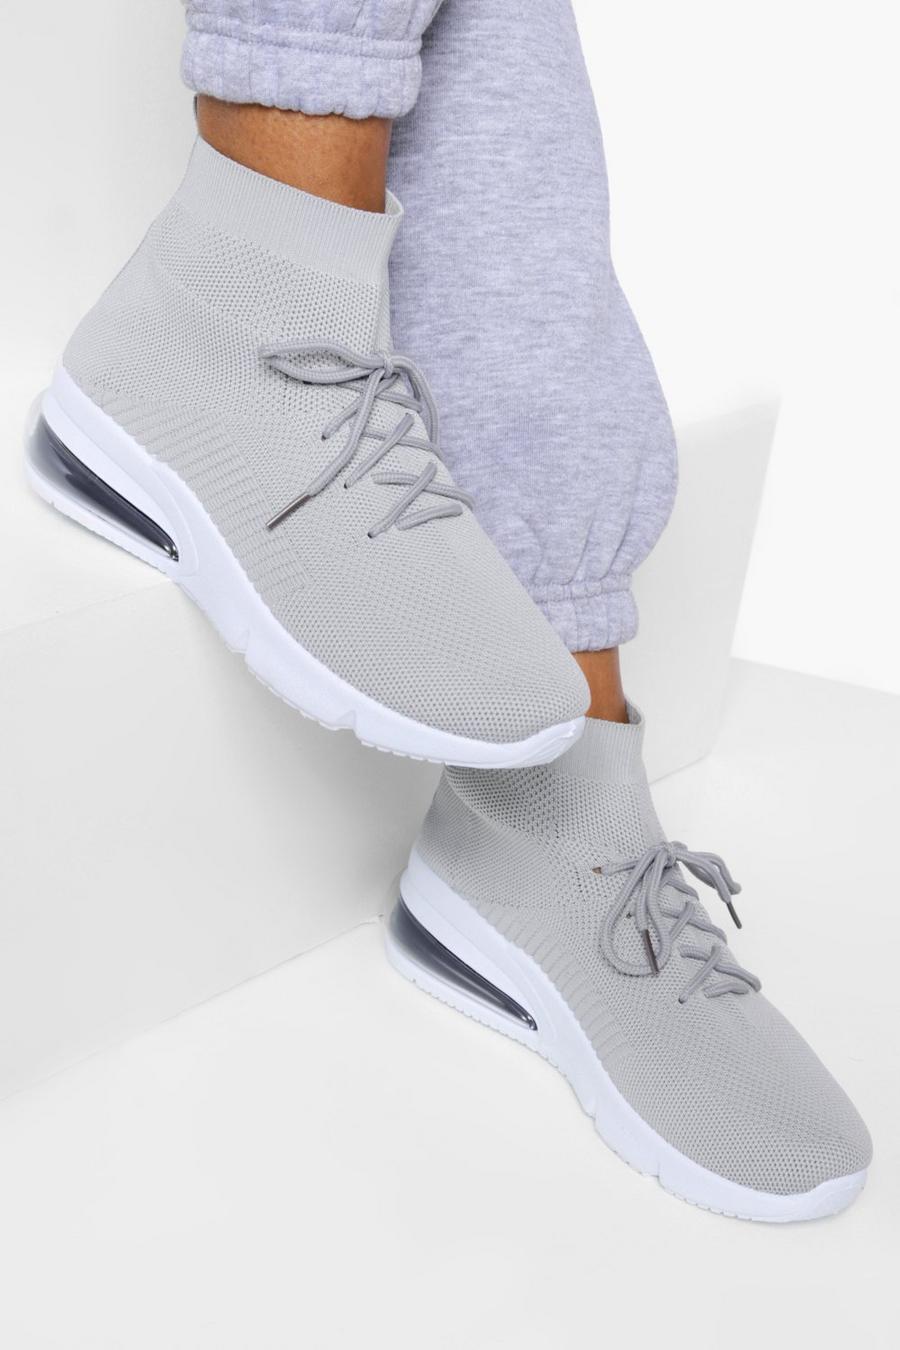 Scarpe da ginnastica a calzata ampia alla caviglia con lacci, Grey grigio